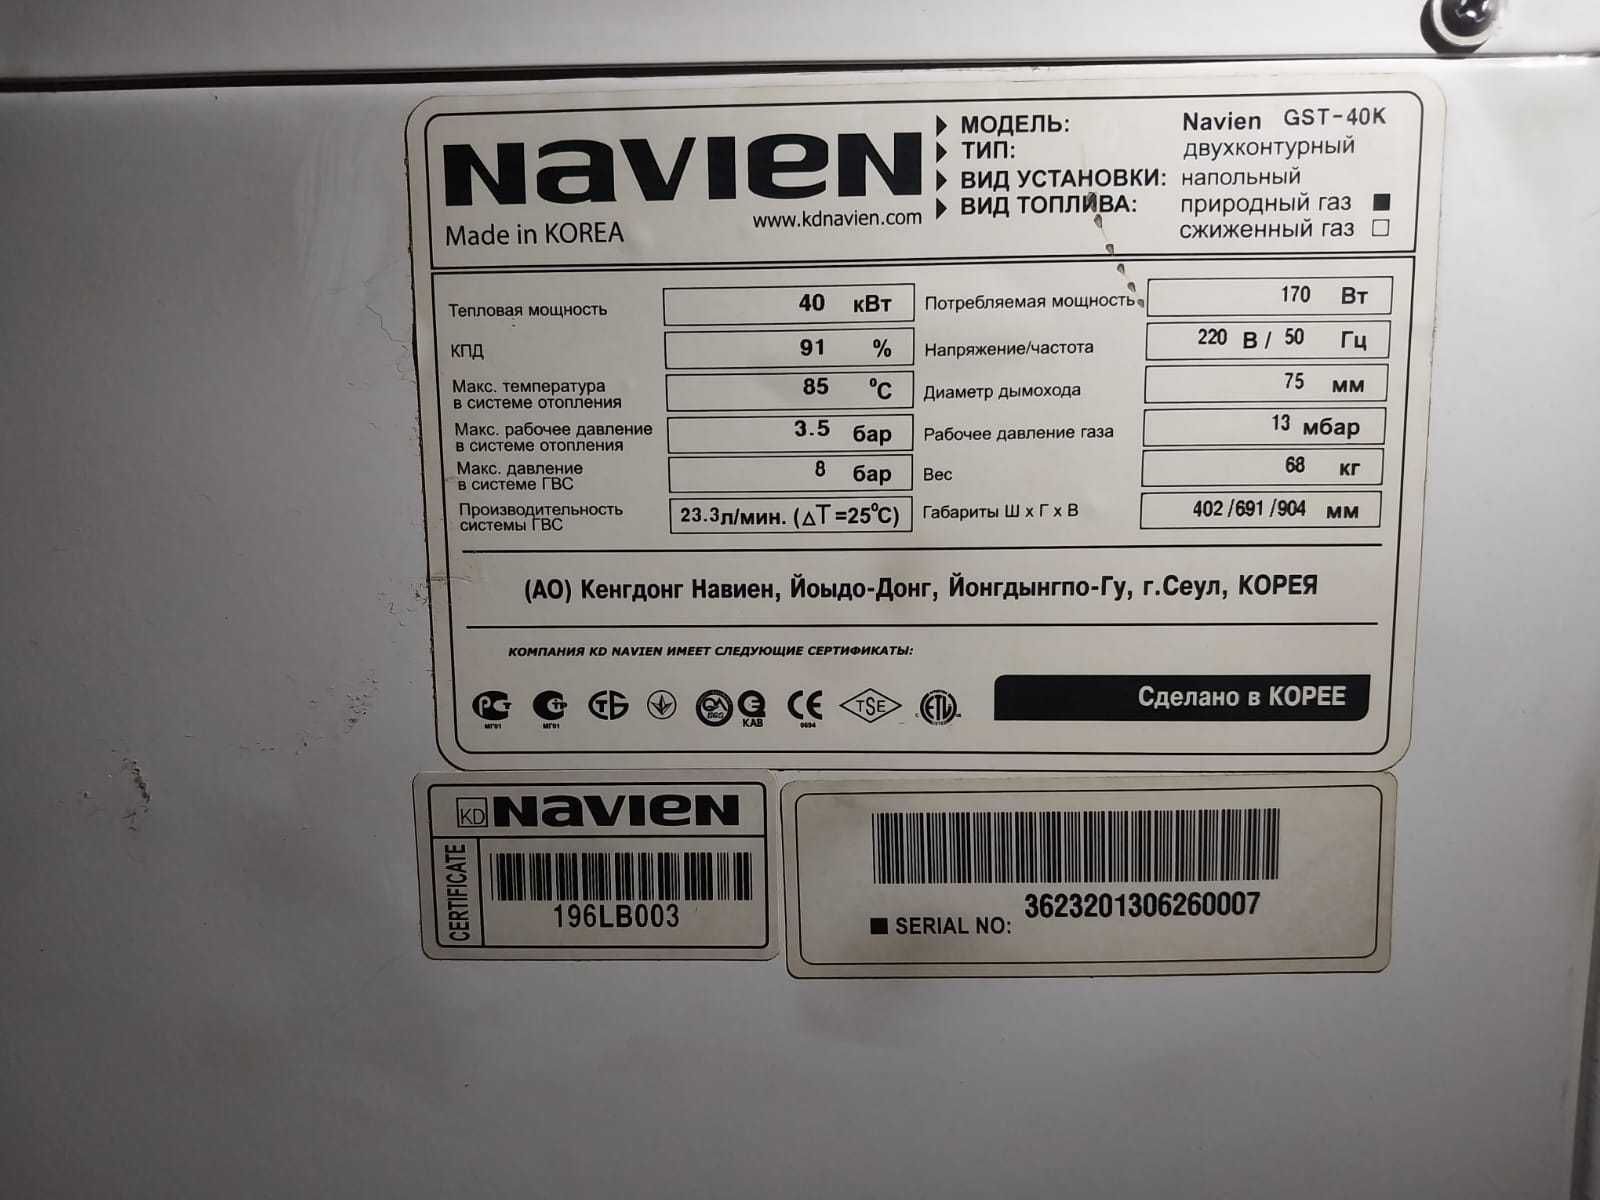 Продается 2-х контурный напольный газовый котел NAVIEN GST-40K